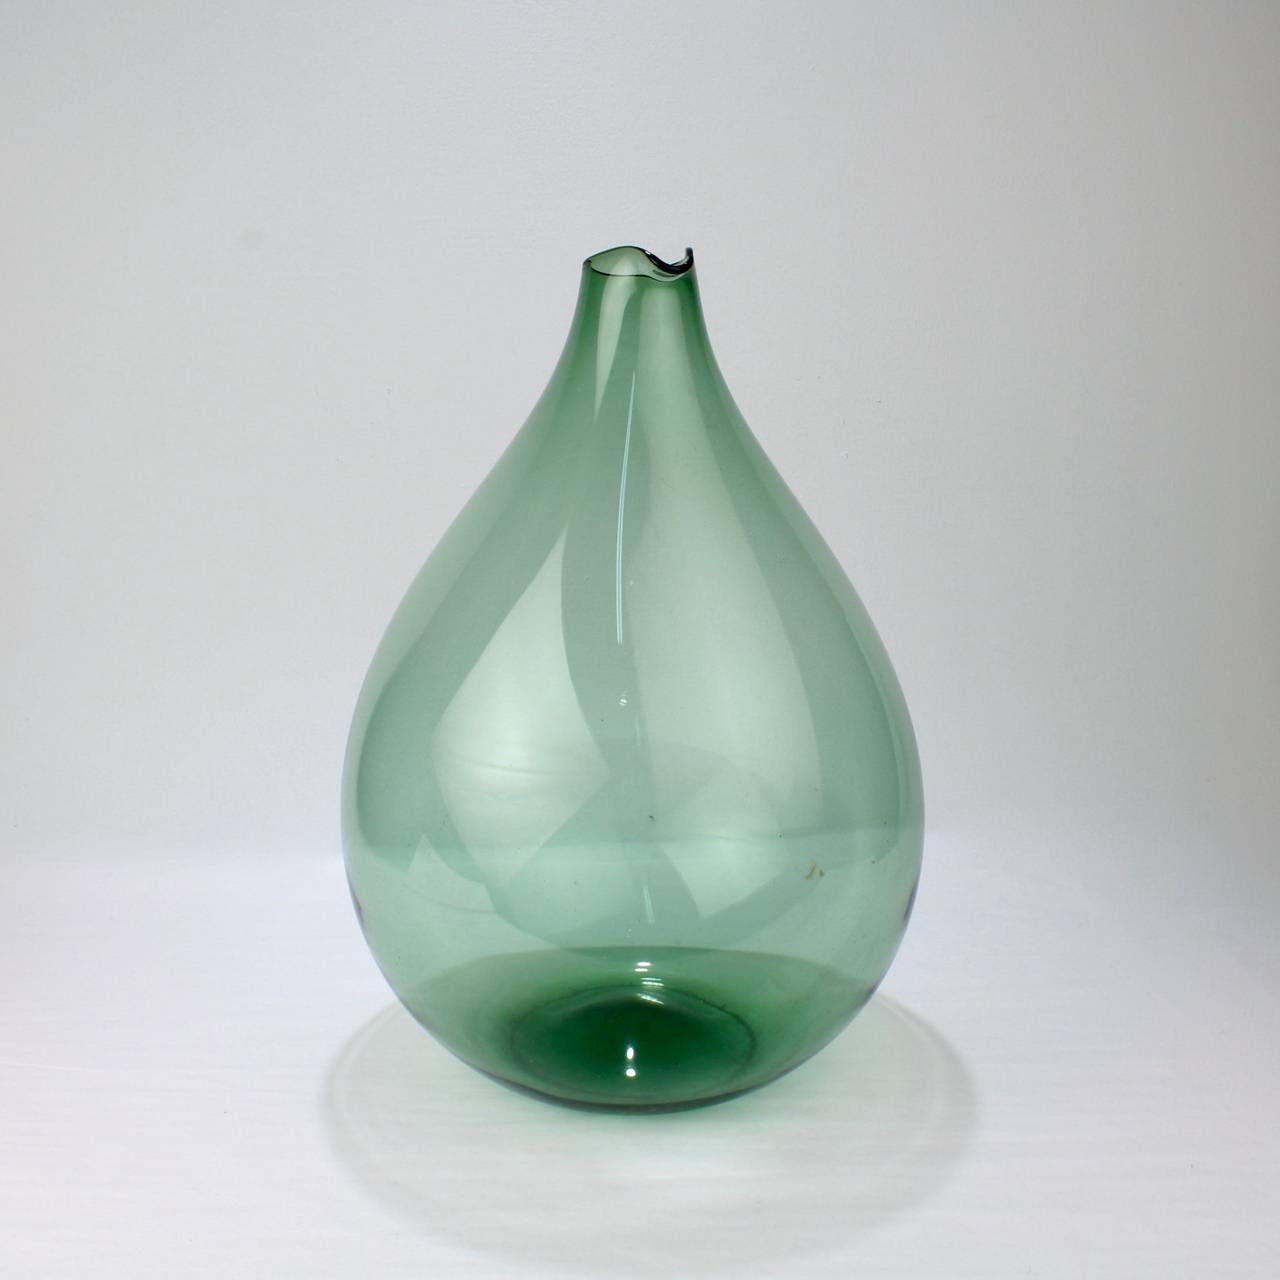 Scandinavian Modern Large Blomkulla Swedish Art Glass Jug by Kjell Blomberg for Gullaskruf, 1960s